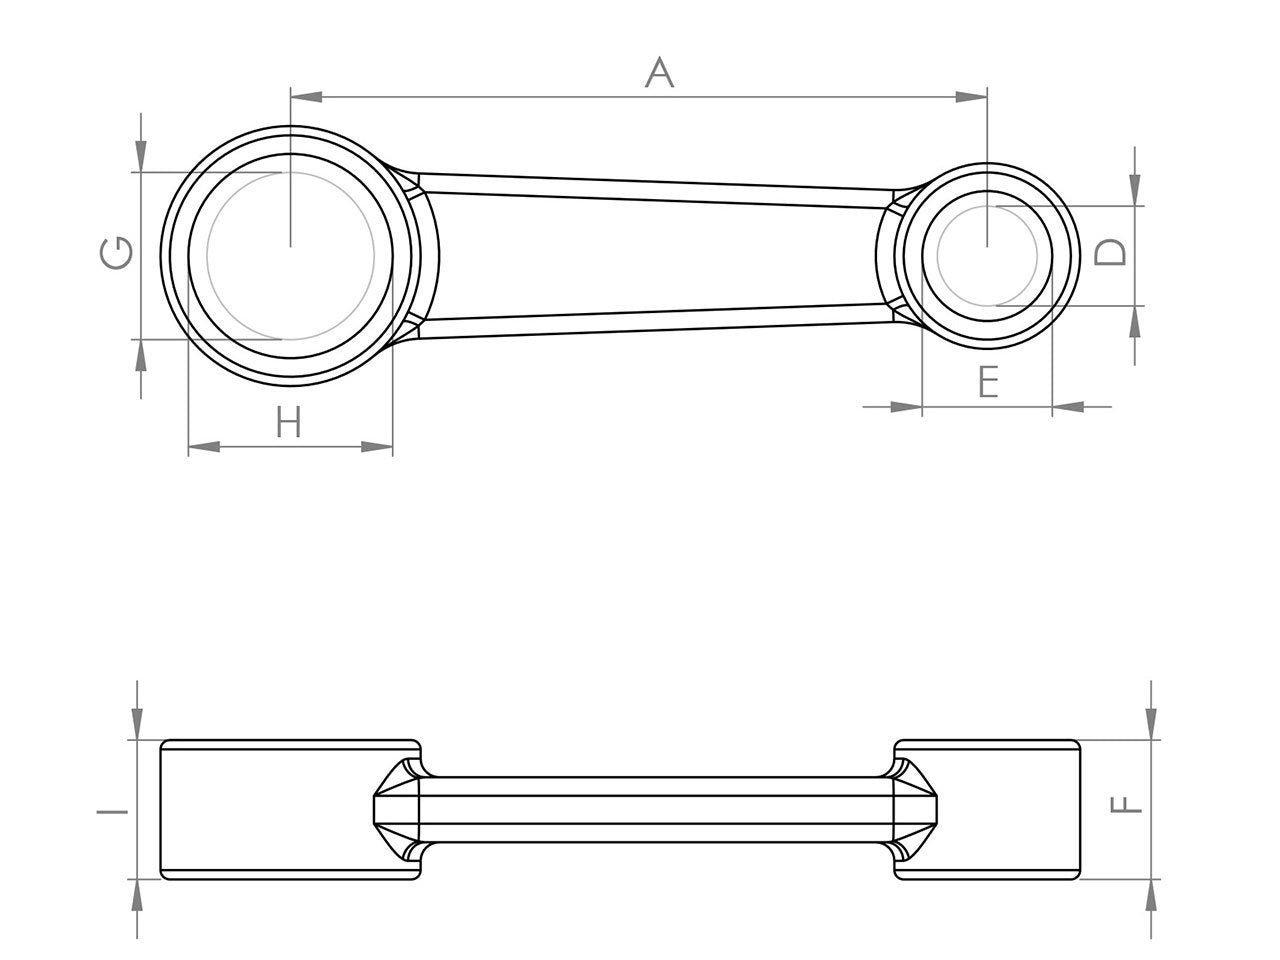 Zeichnung Barikit Pleuel für einen Suzuki Katana Motor mit Bemaßung.